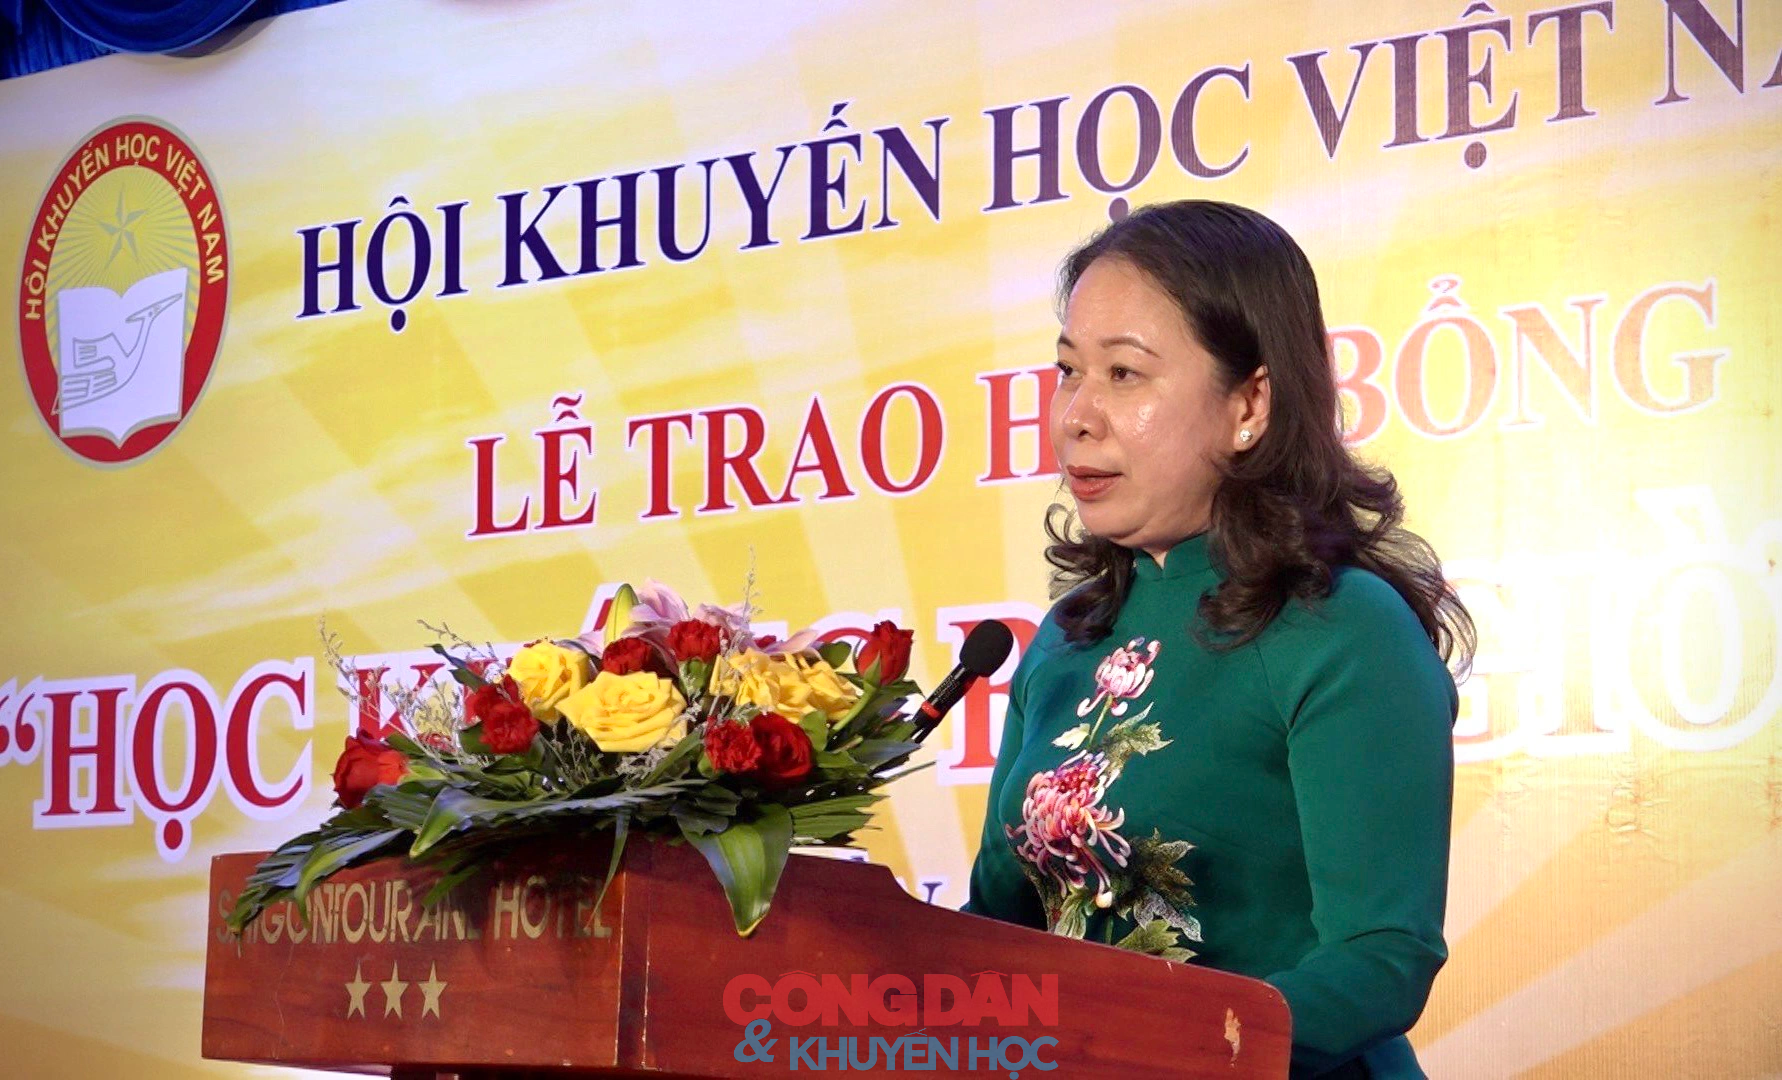 Hội Khuyến học Việt Nam trao 250 suất học bổng "Học không bao giờ cùng" tặng học sinh và người lớn - Ảnh 3.